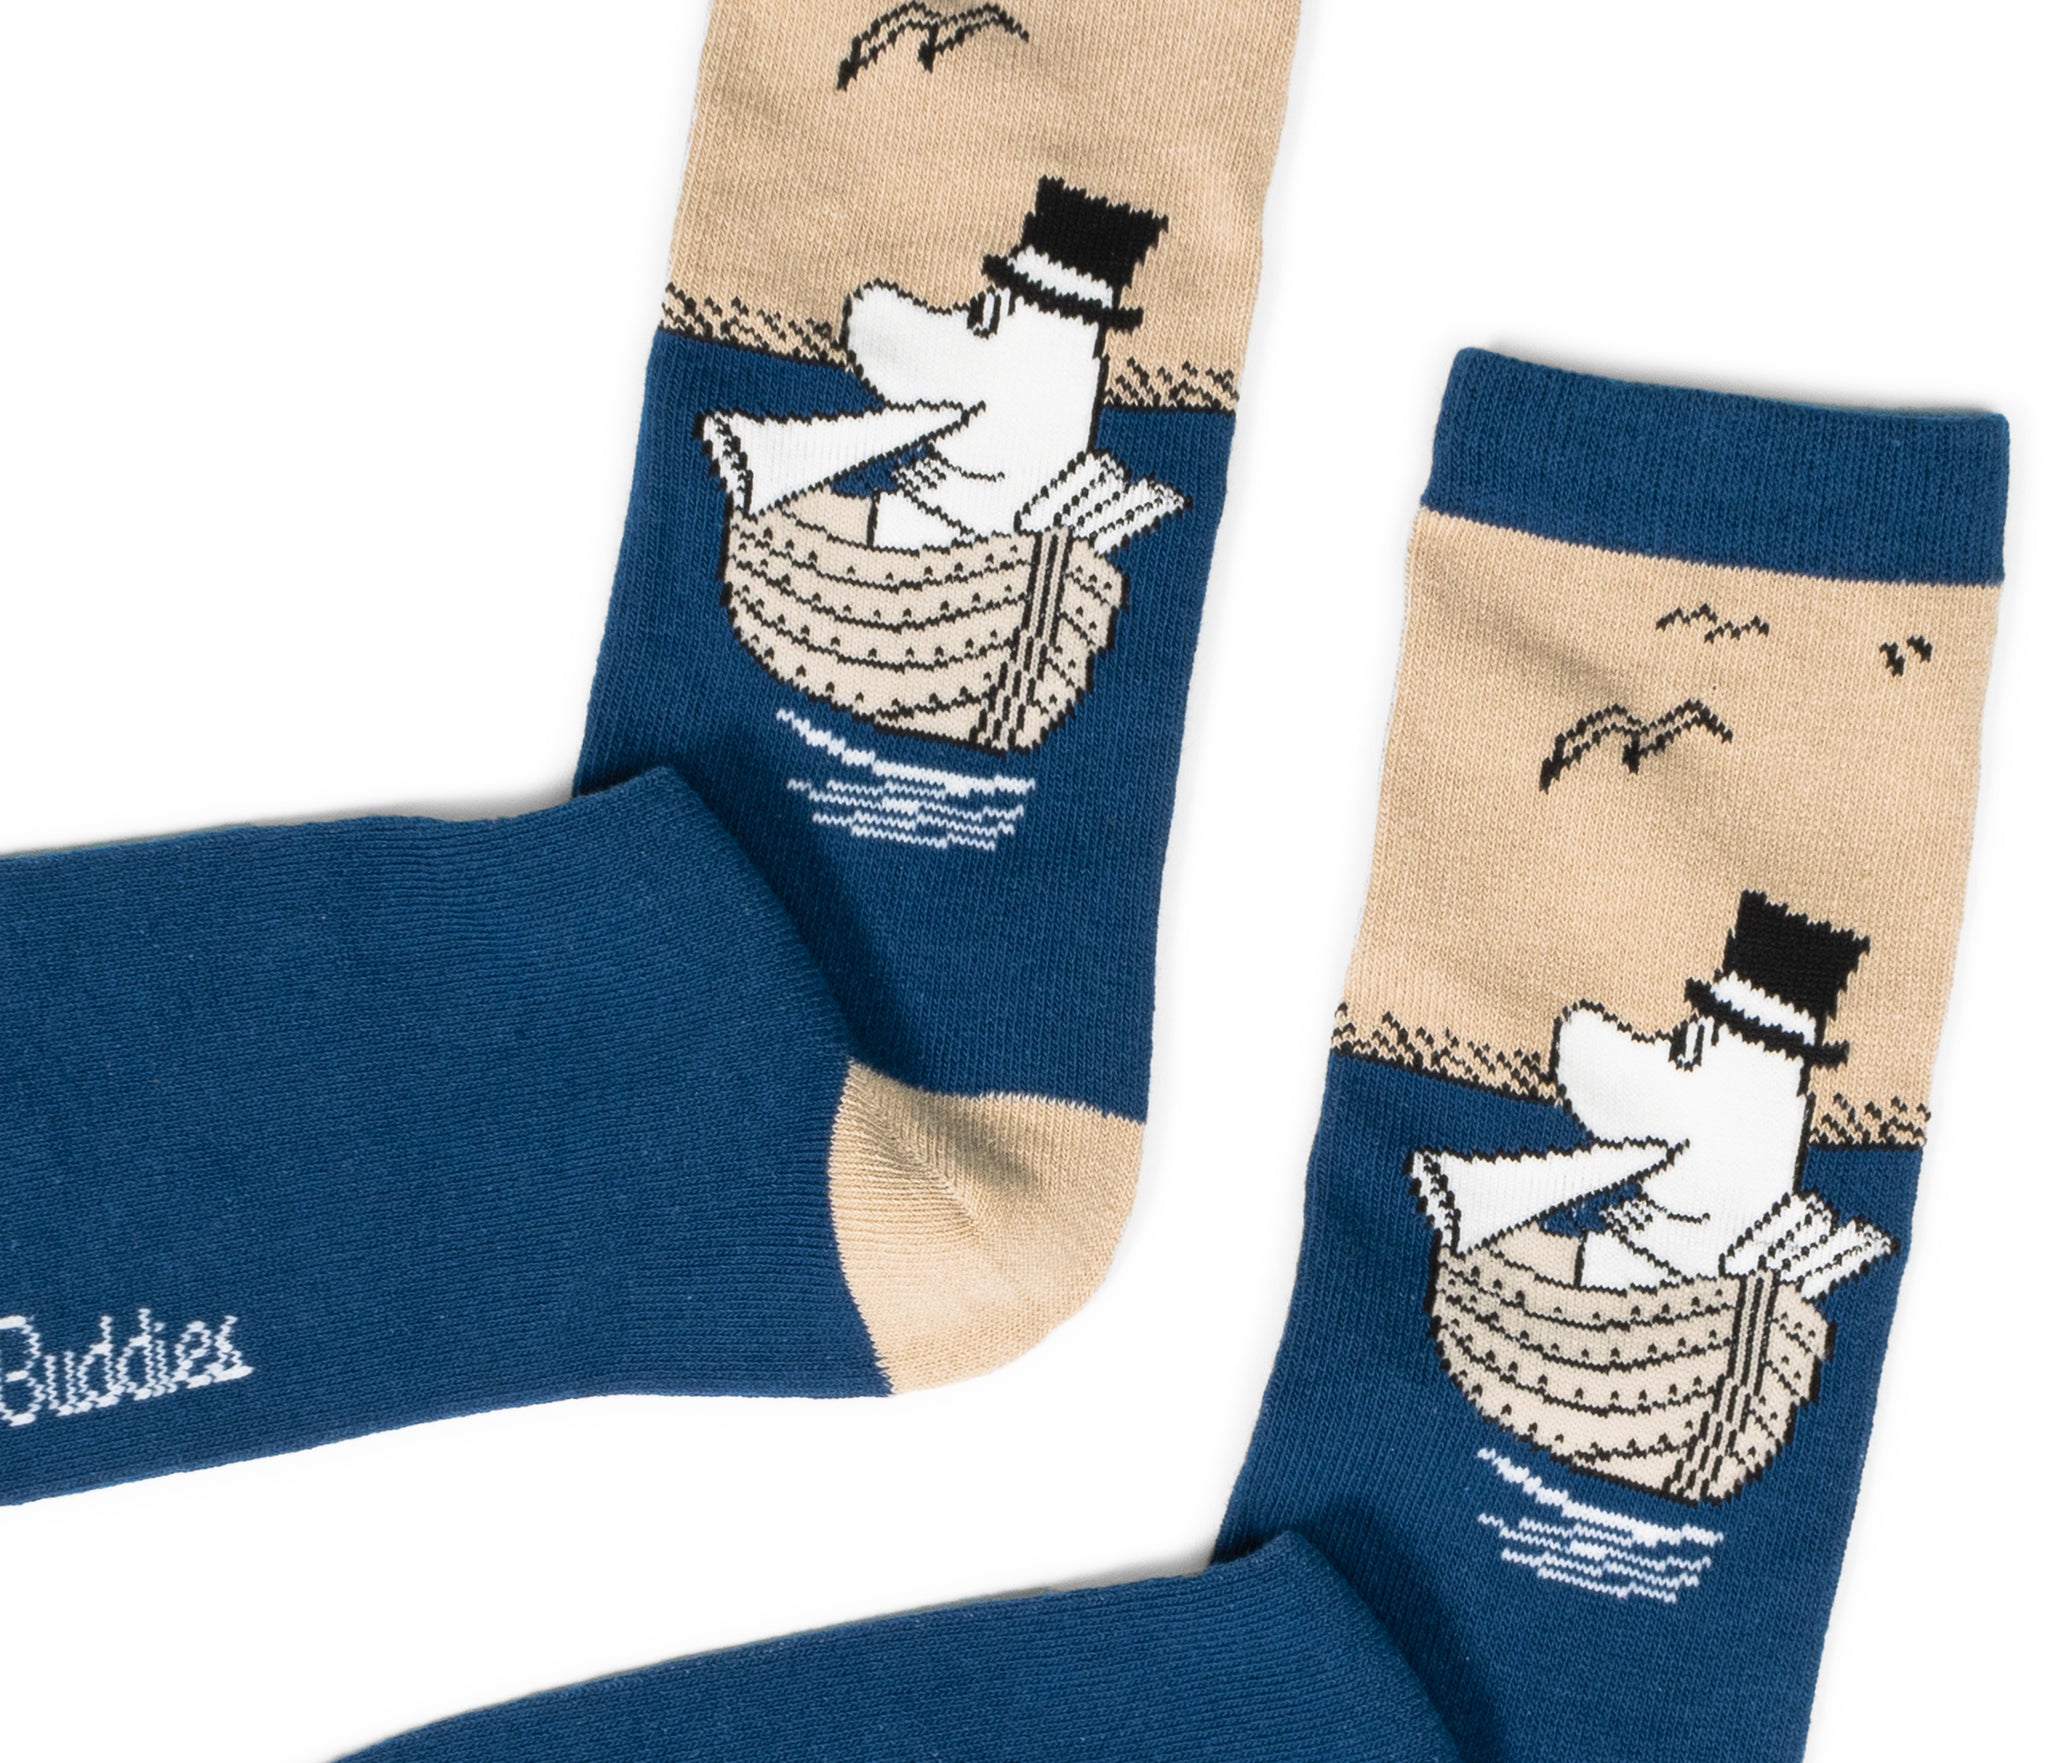 Moominpappa Boating Men Socks - Blue/Beige